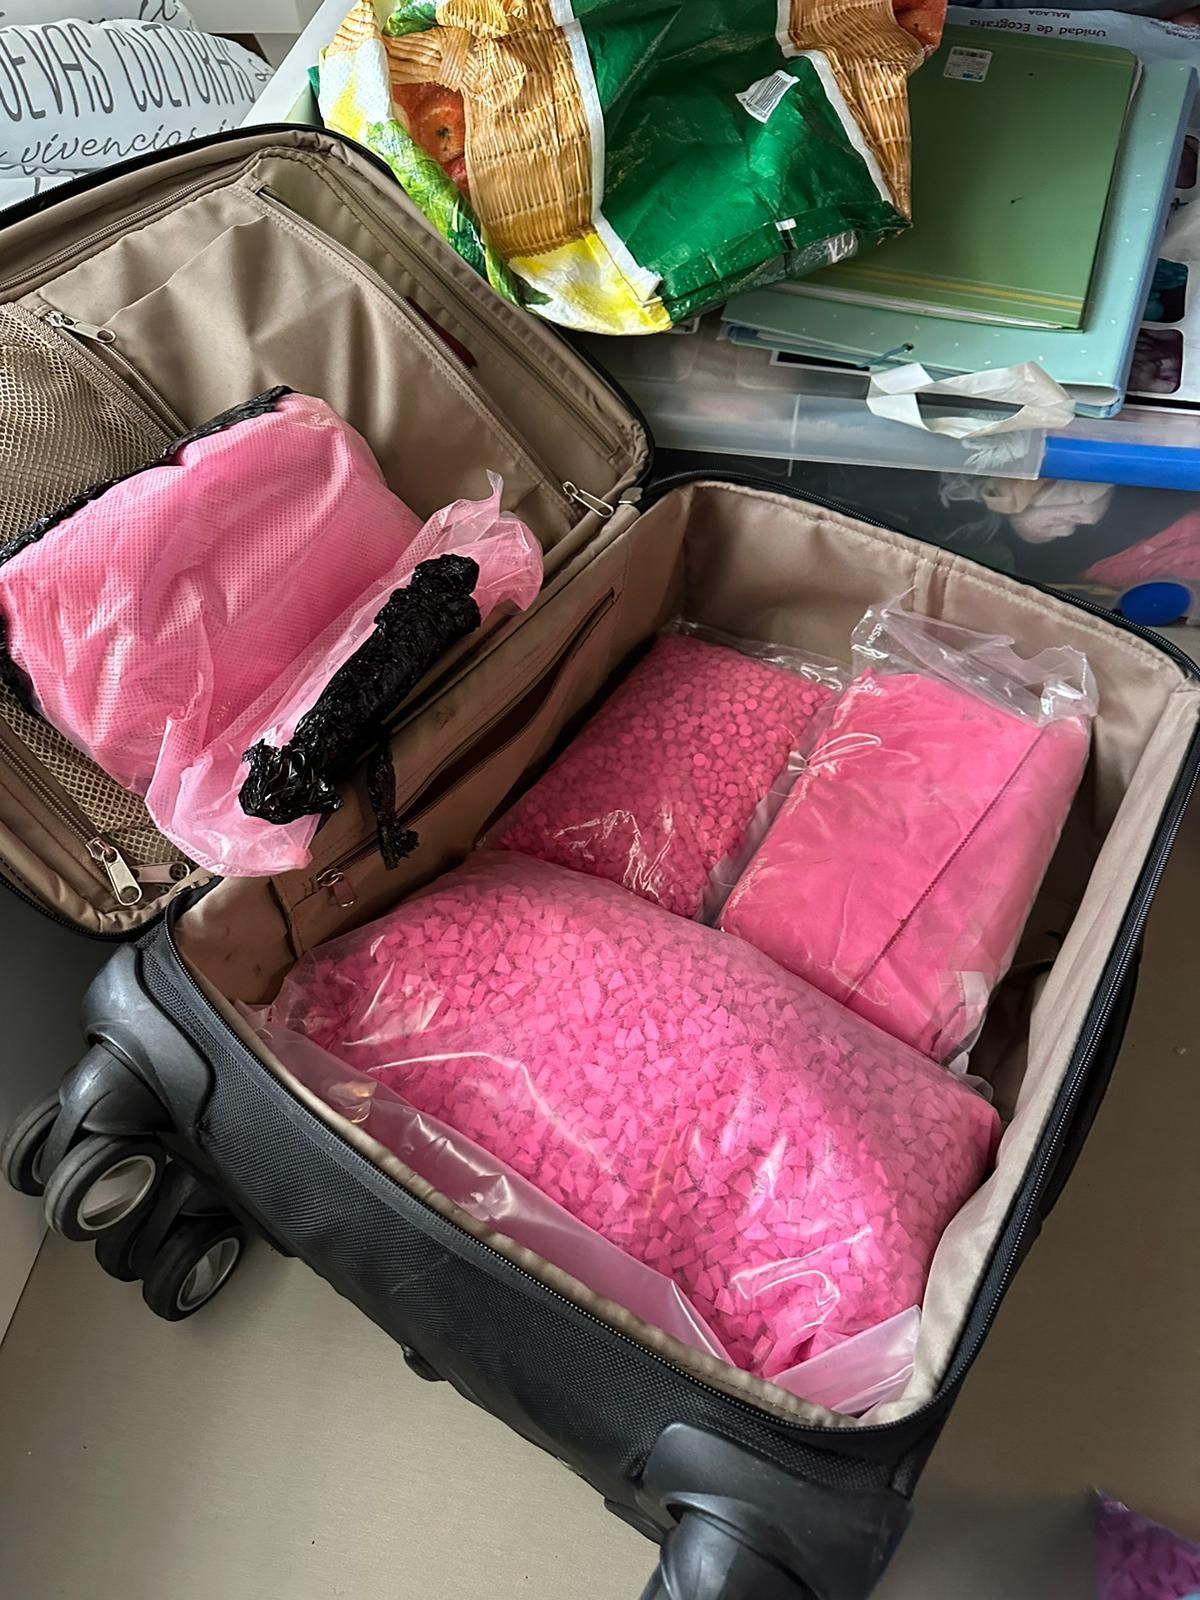 Cocaína rosa en una maleta.